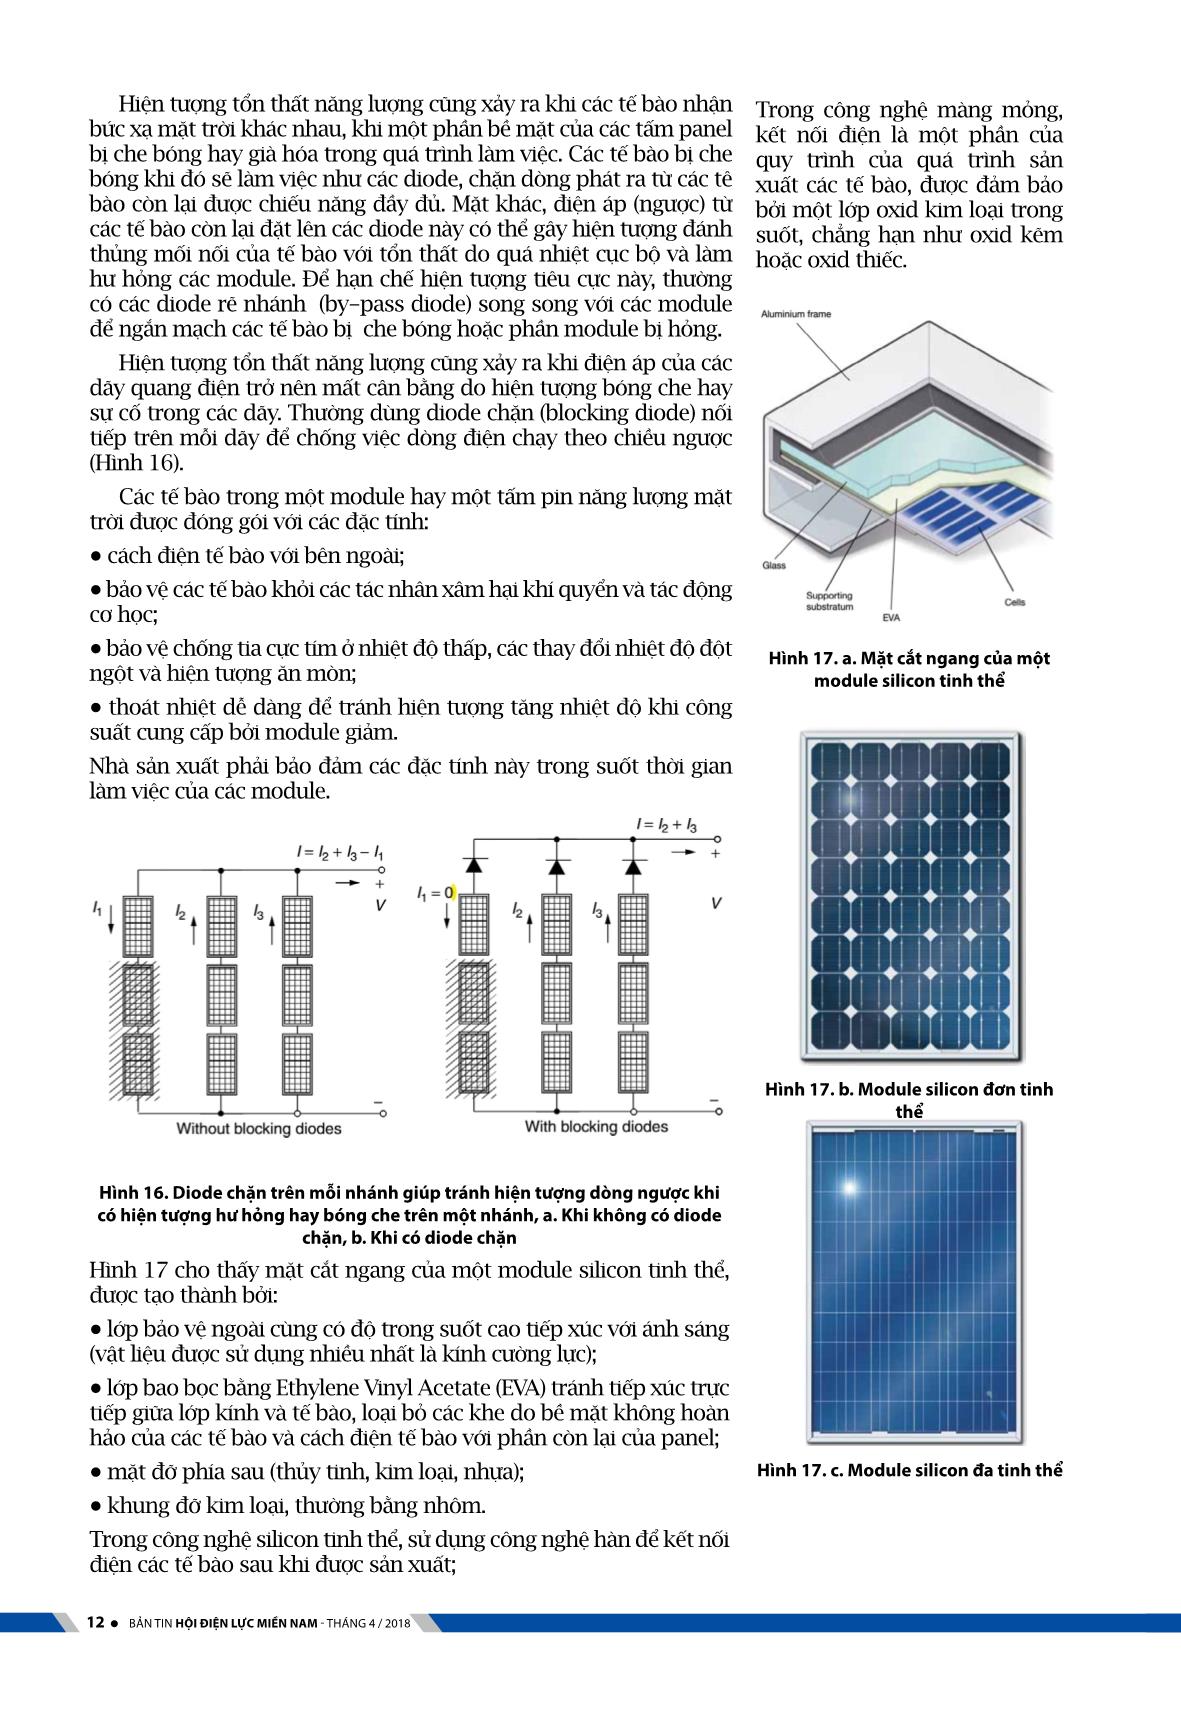 Kỹ thuật hệ thống điện mặt trời với công nghệ quang điện trang 8